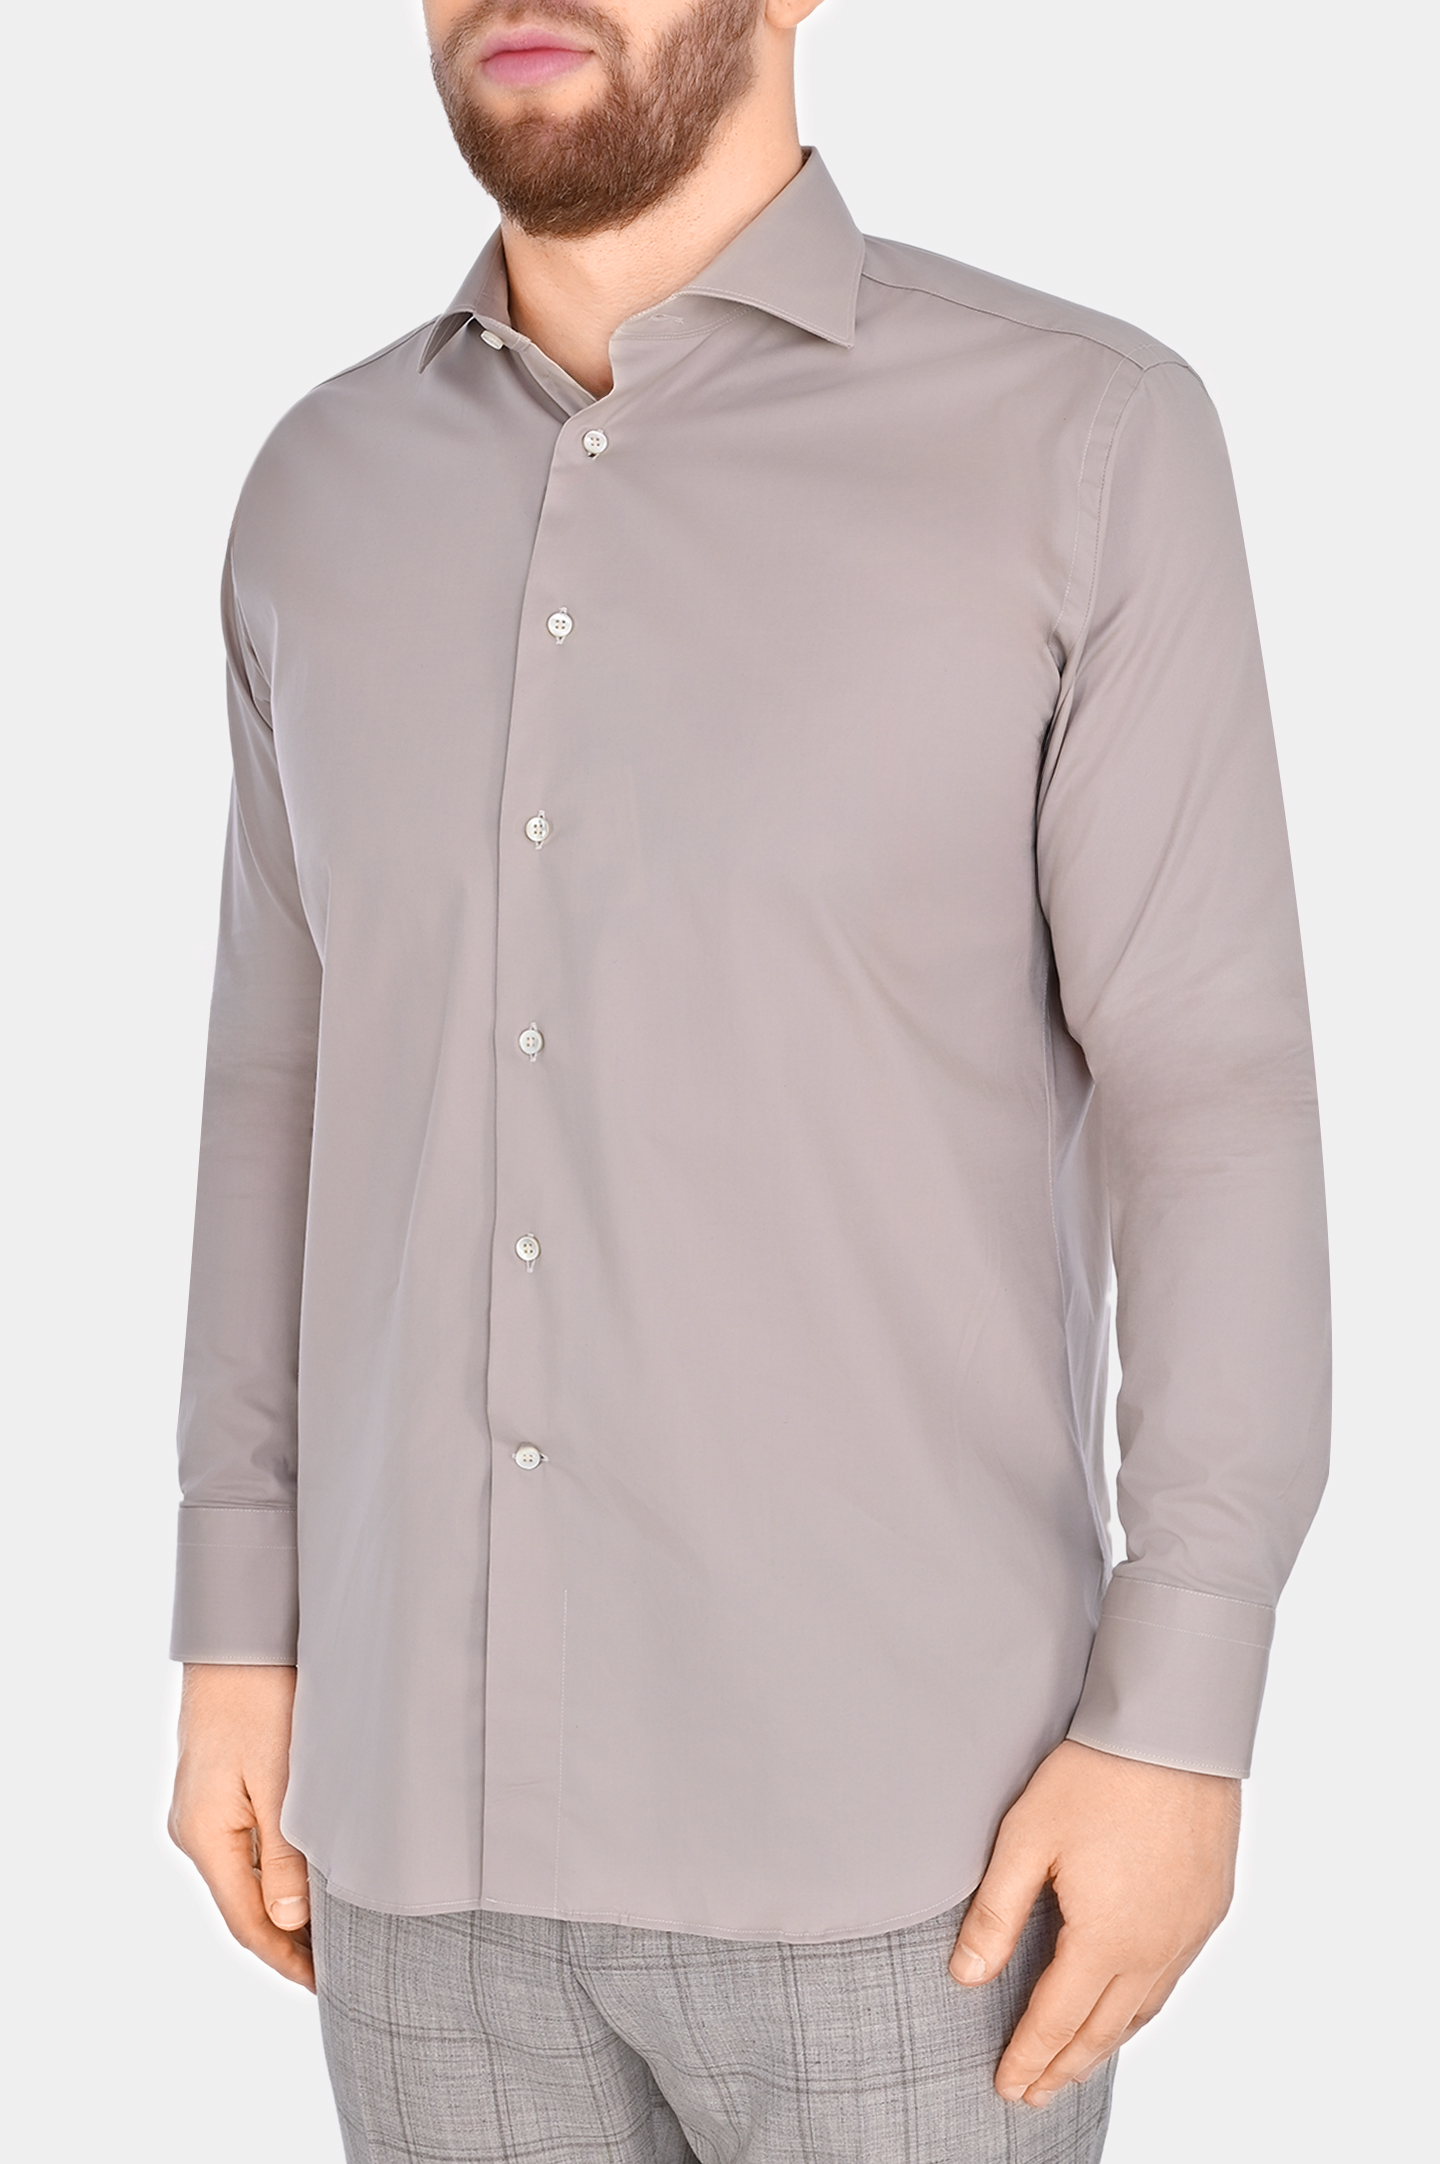 Рубашка из хлопка и эластана CANALI GD02832 7C3/1, цвет: Светло-бежевый, Мужской